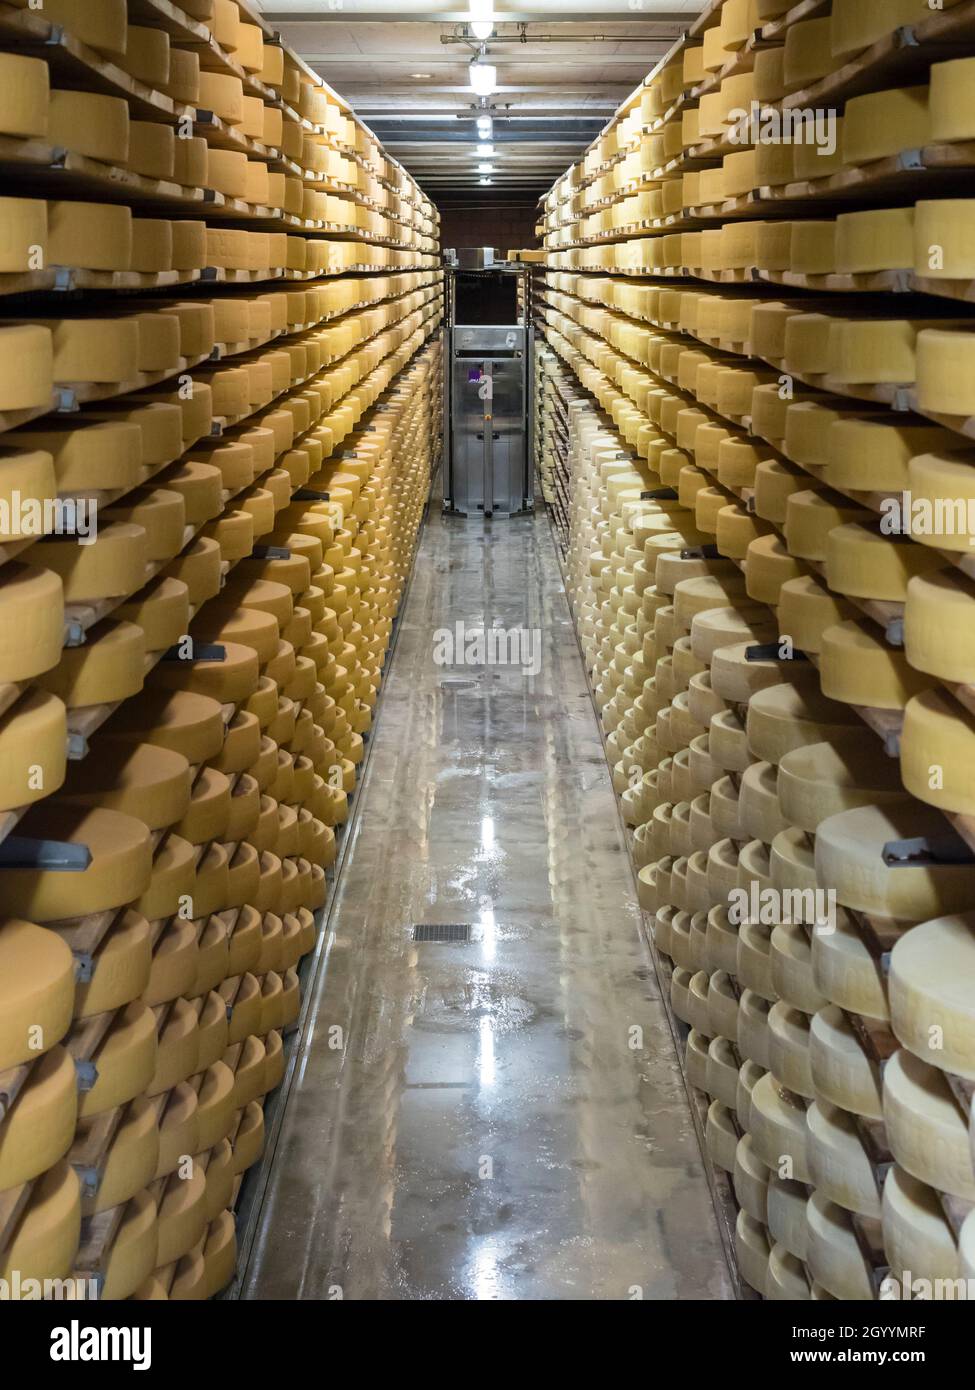 De longues rangées avec de grandes roues de fromage suisse Gruyère sont en train de mûrir au journal du fromage de Gruyère, en Suisse. Banque D'Images